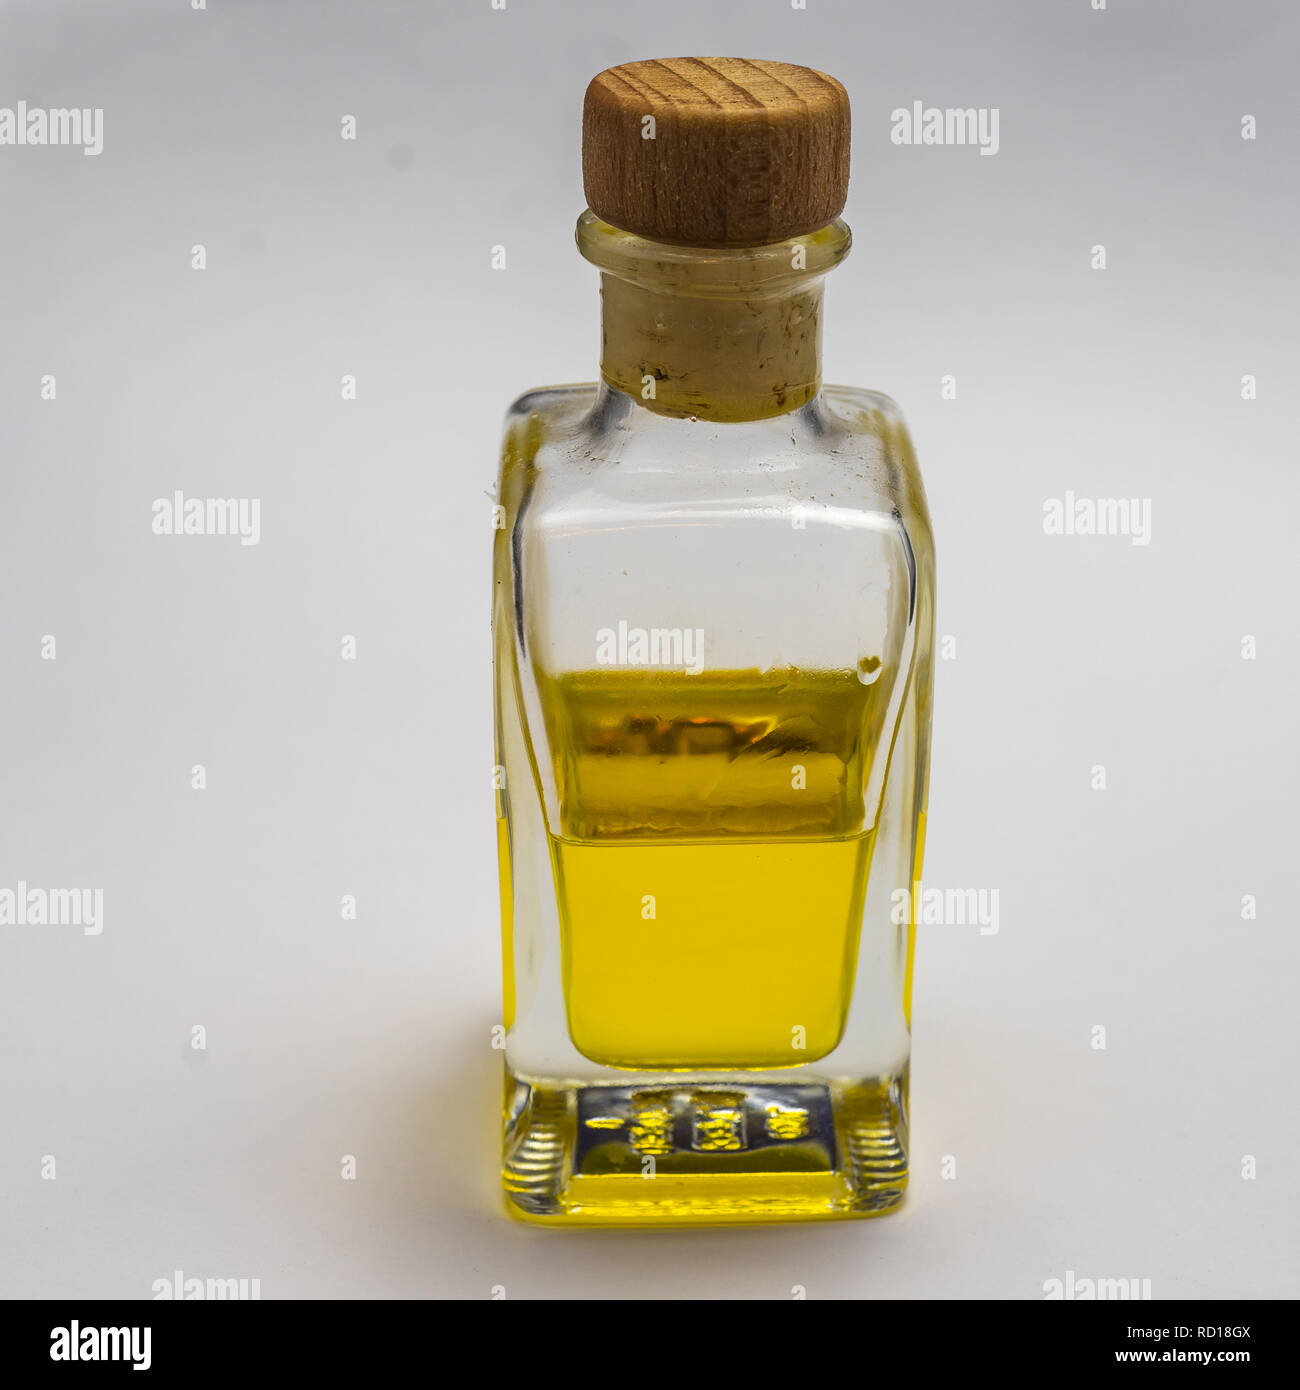 Le flacon en verre rectangulaire transparent avec un bouchon de liège. La moitié rempli d'un liquide lumineux jaune, exposée sur un fond blanc. Banque D'Images